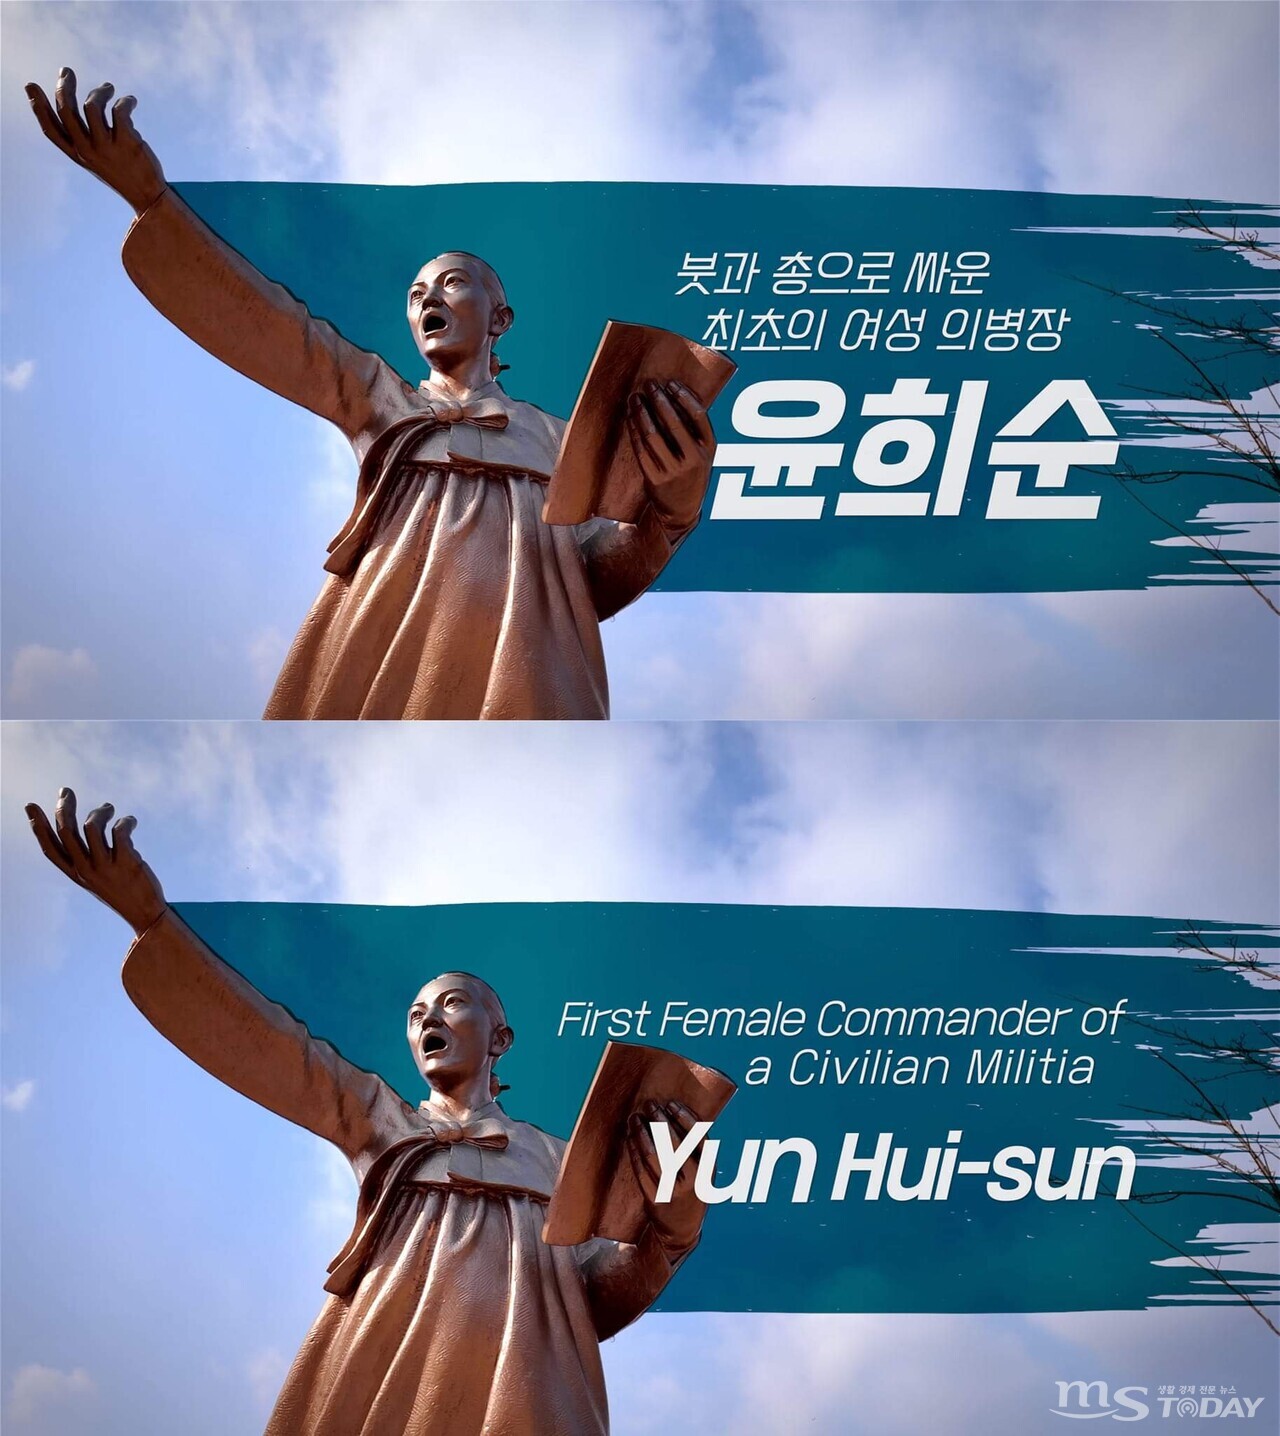 윤희순 의사를 다룬 영상은 한국어와 영어 2개 버전으로 만들어졌다. (사진=서경덕 교수 SNS)